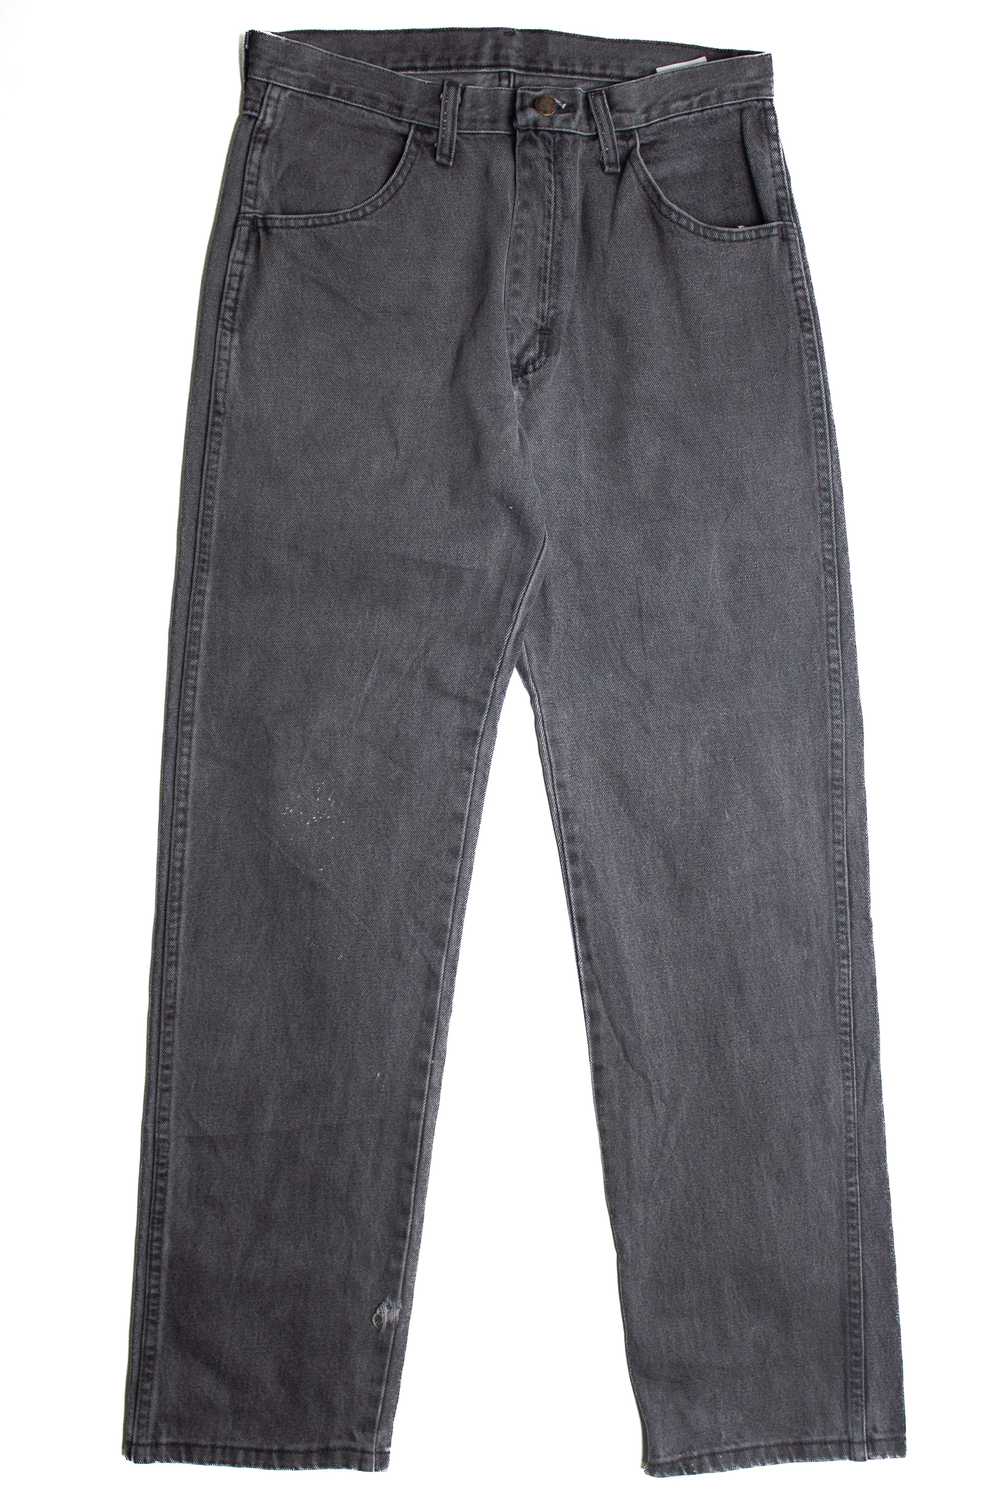 Vintage Rustler Denim Jeans (1990s) 1013 - image 1